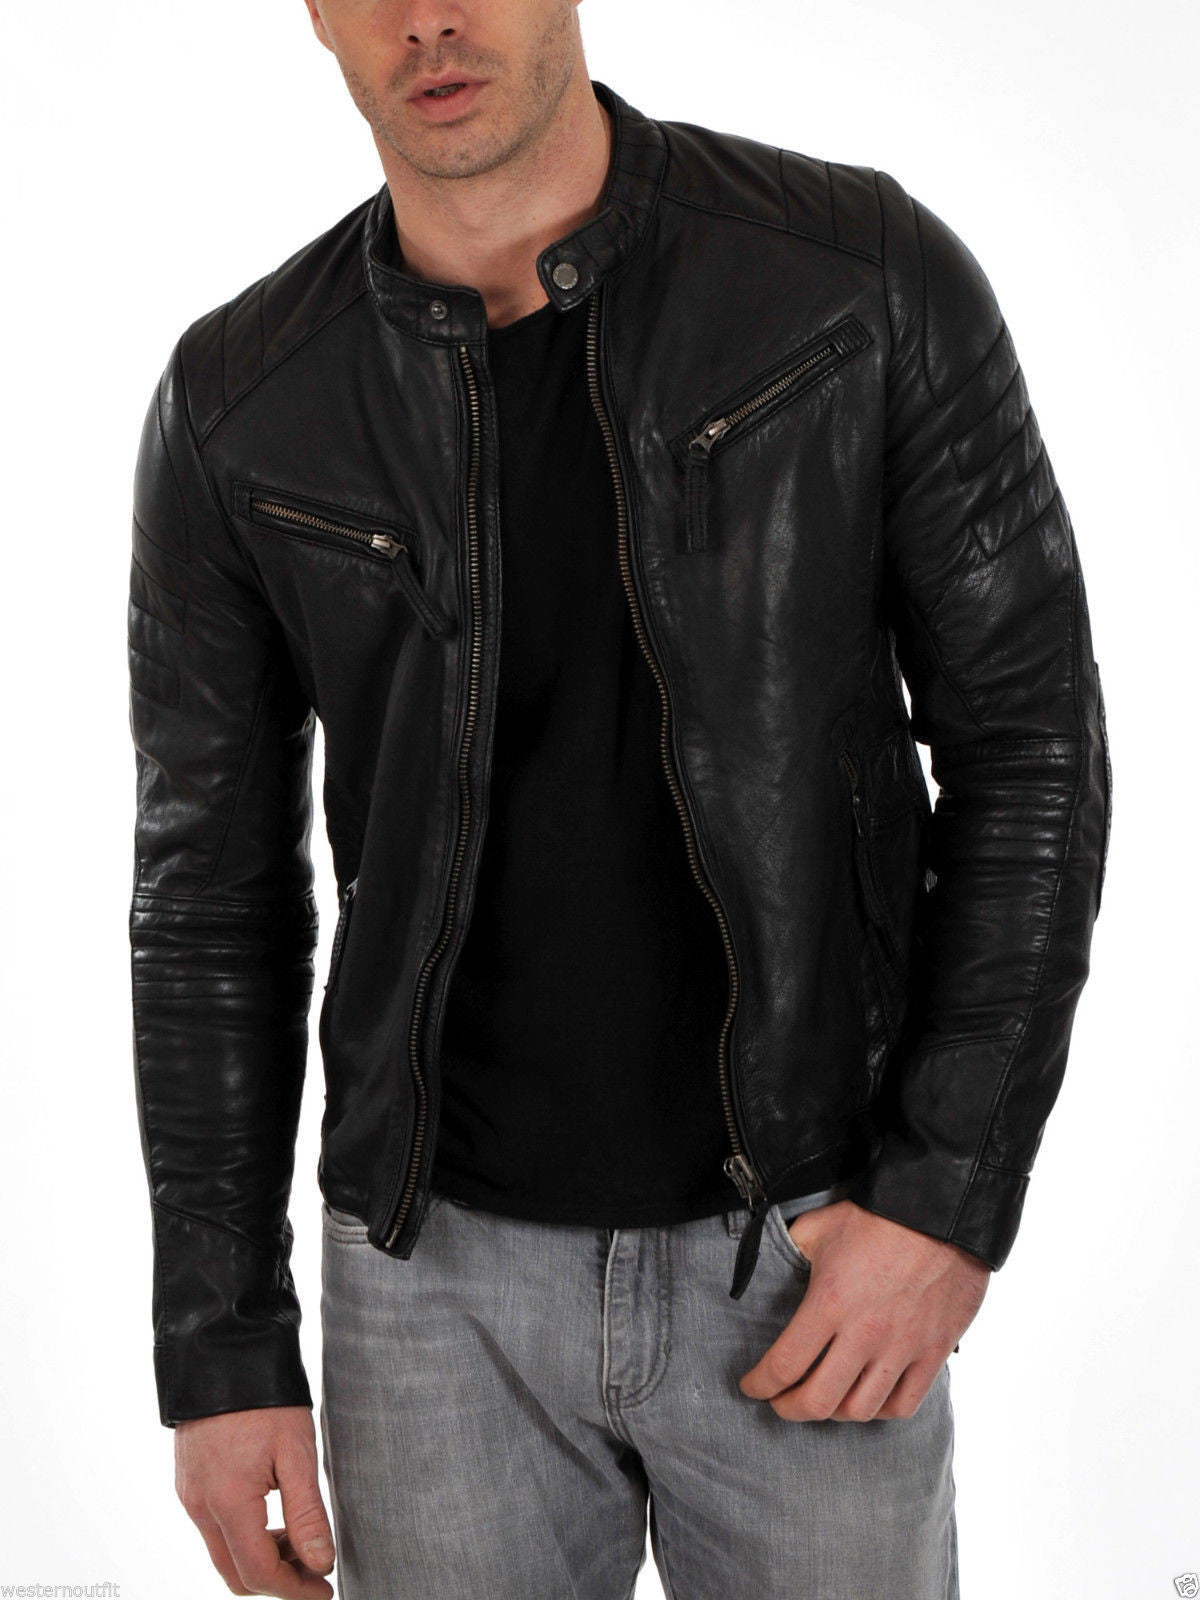 Skylinewears Mens Motorbike Leather Jacket 100% Genuine Lambskin Leather  Biker Jacket Camel Size S - Walmart.com